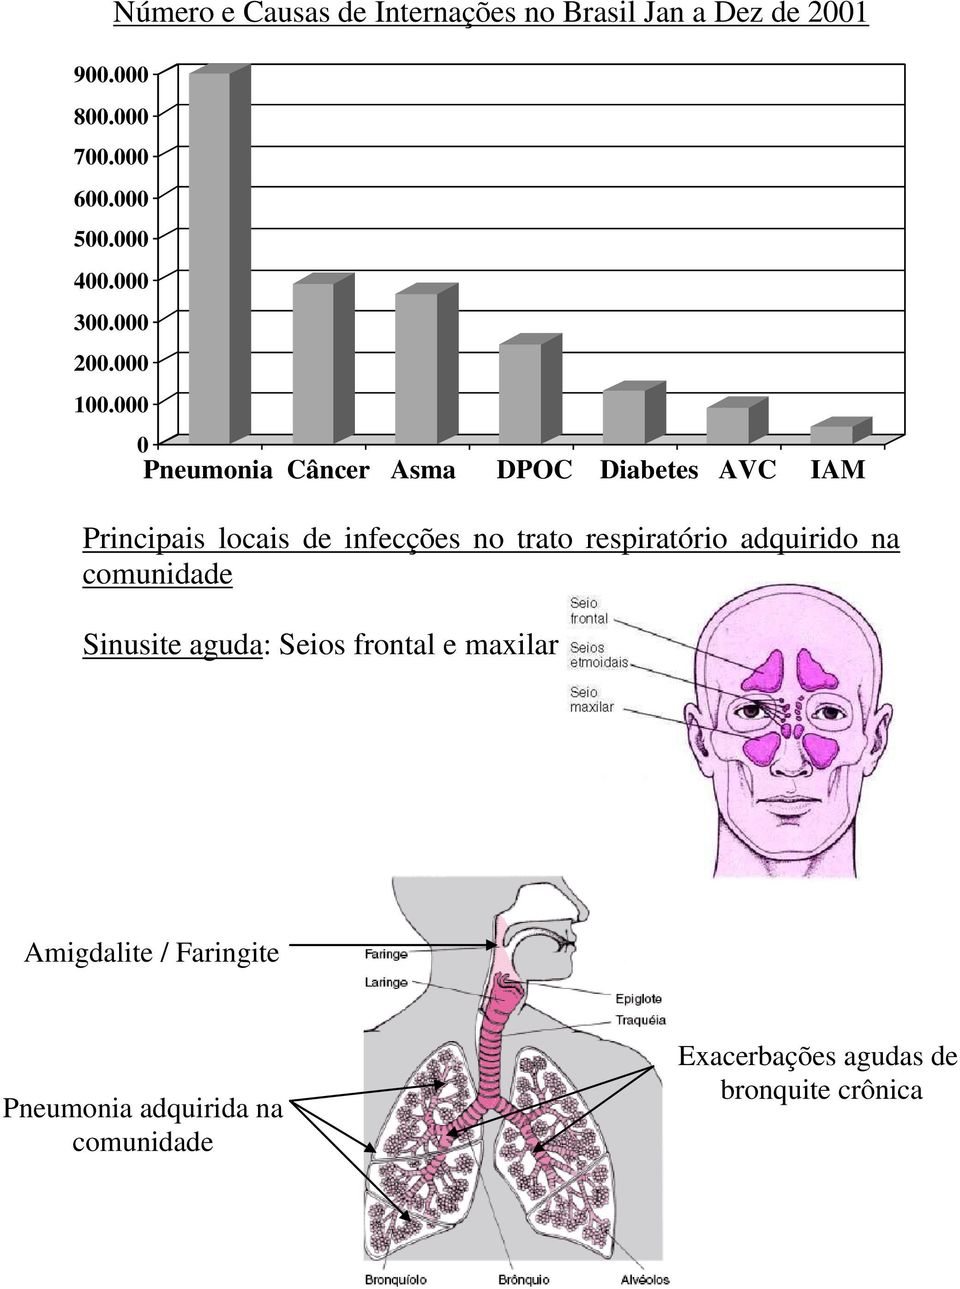 000 0 Pneumonia Câncer Asma DPOC Diabetes AVC IAM Principais locais de infecções no trato